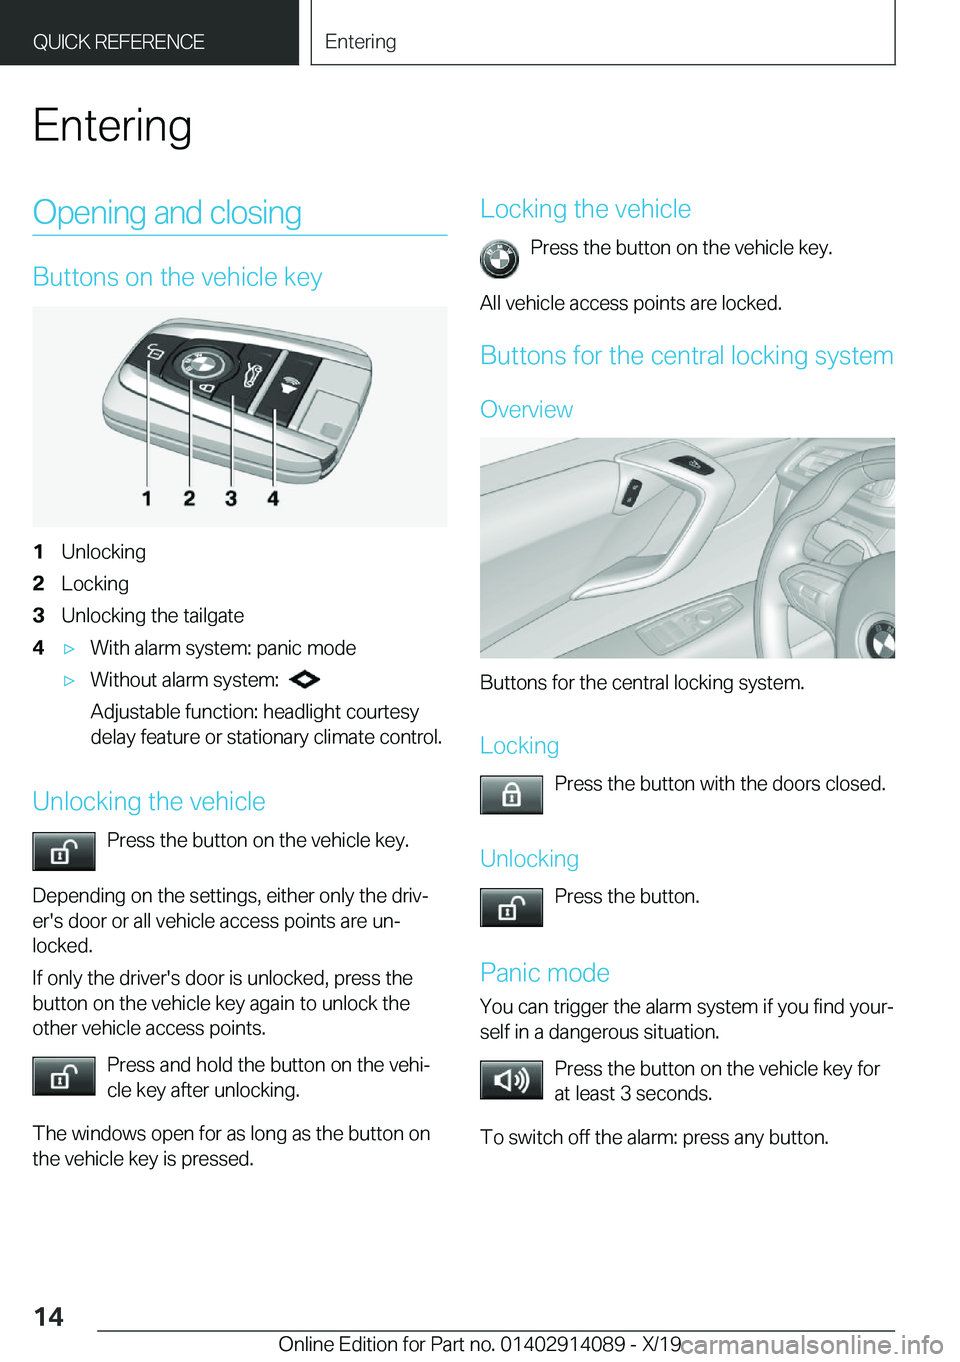 BMW I8 2020 User Guide �E�n�t�e�r�i�n�g�O�p�e�n�i�n�g��a�n�d��c�l�o�s�i�n�g
�B�u�t�t�o�n�s��o�n��t�h�e��v�e�h�i�c�l�e��k�e�y
�1�U�n�l�o�c�k�i�n�g�2�L�o�c�k�i�n�g�3�U�n�l�o�c�k�i�n�g��t�h�e��t�a�i�l�g�a�t�e�4'x�W